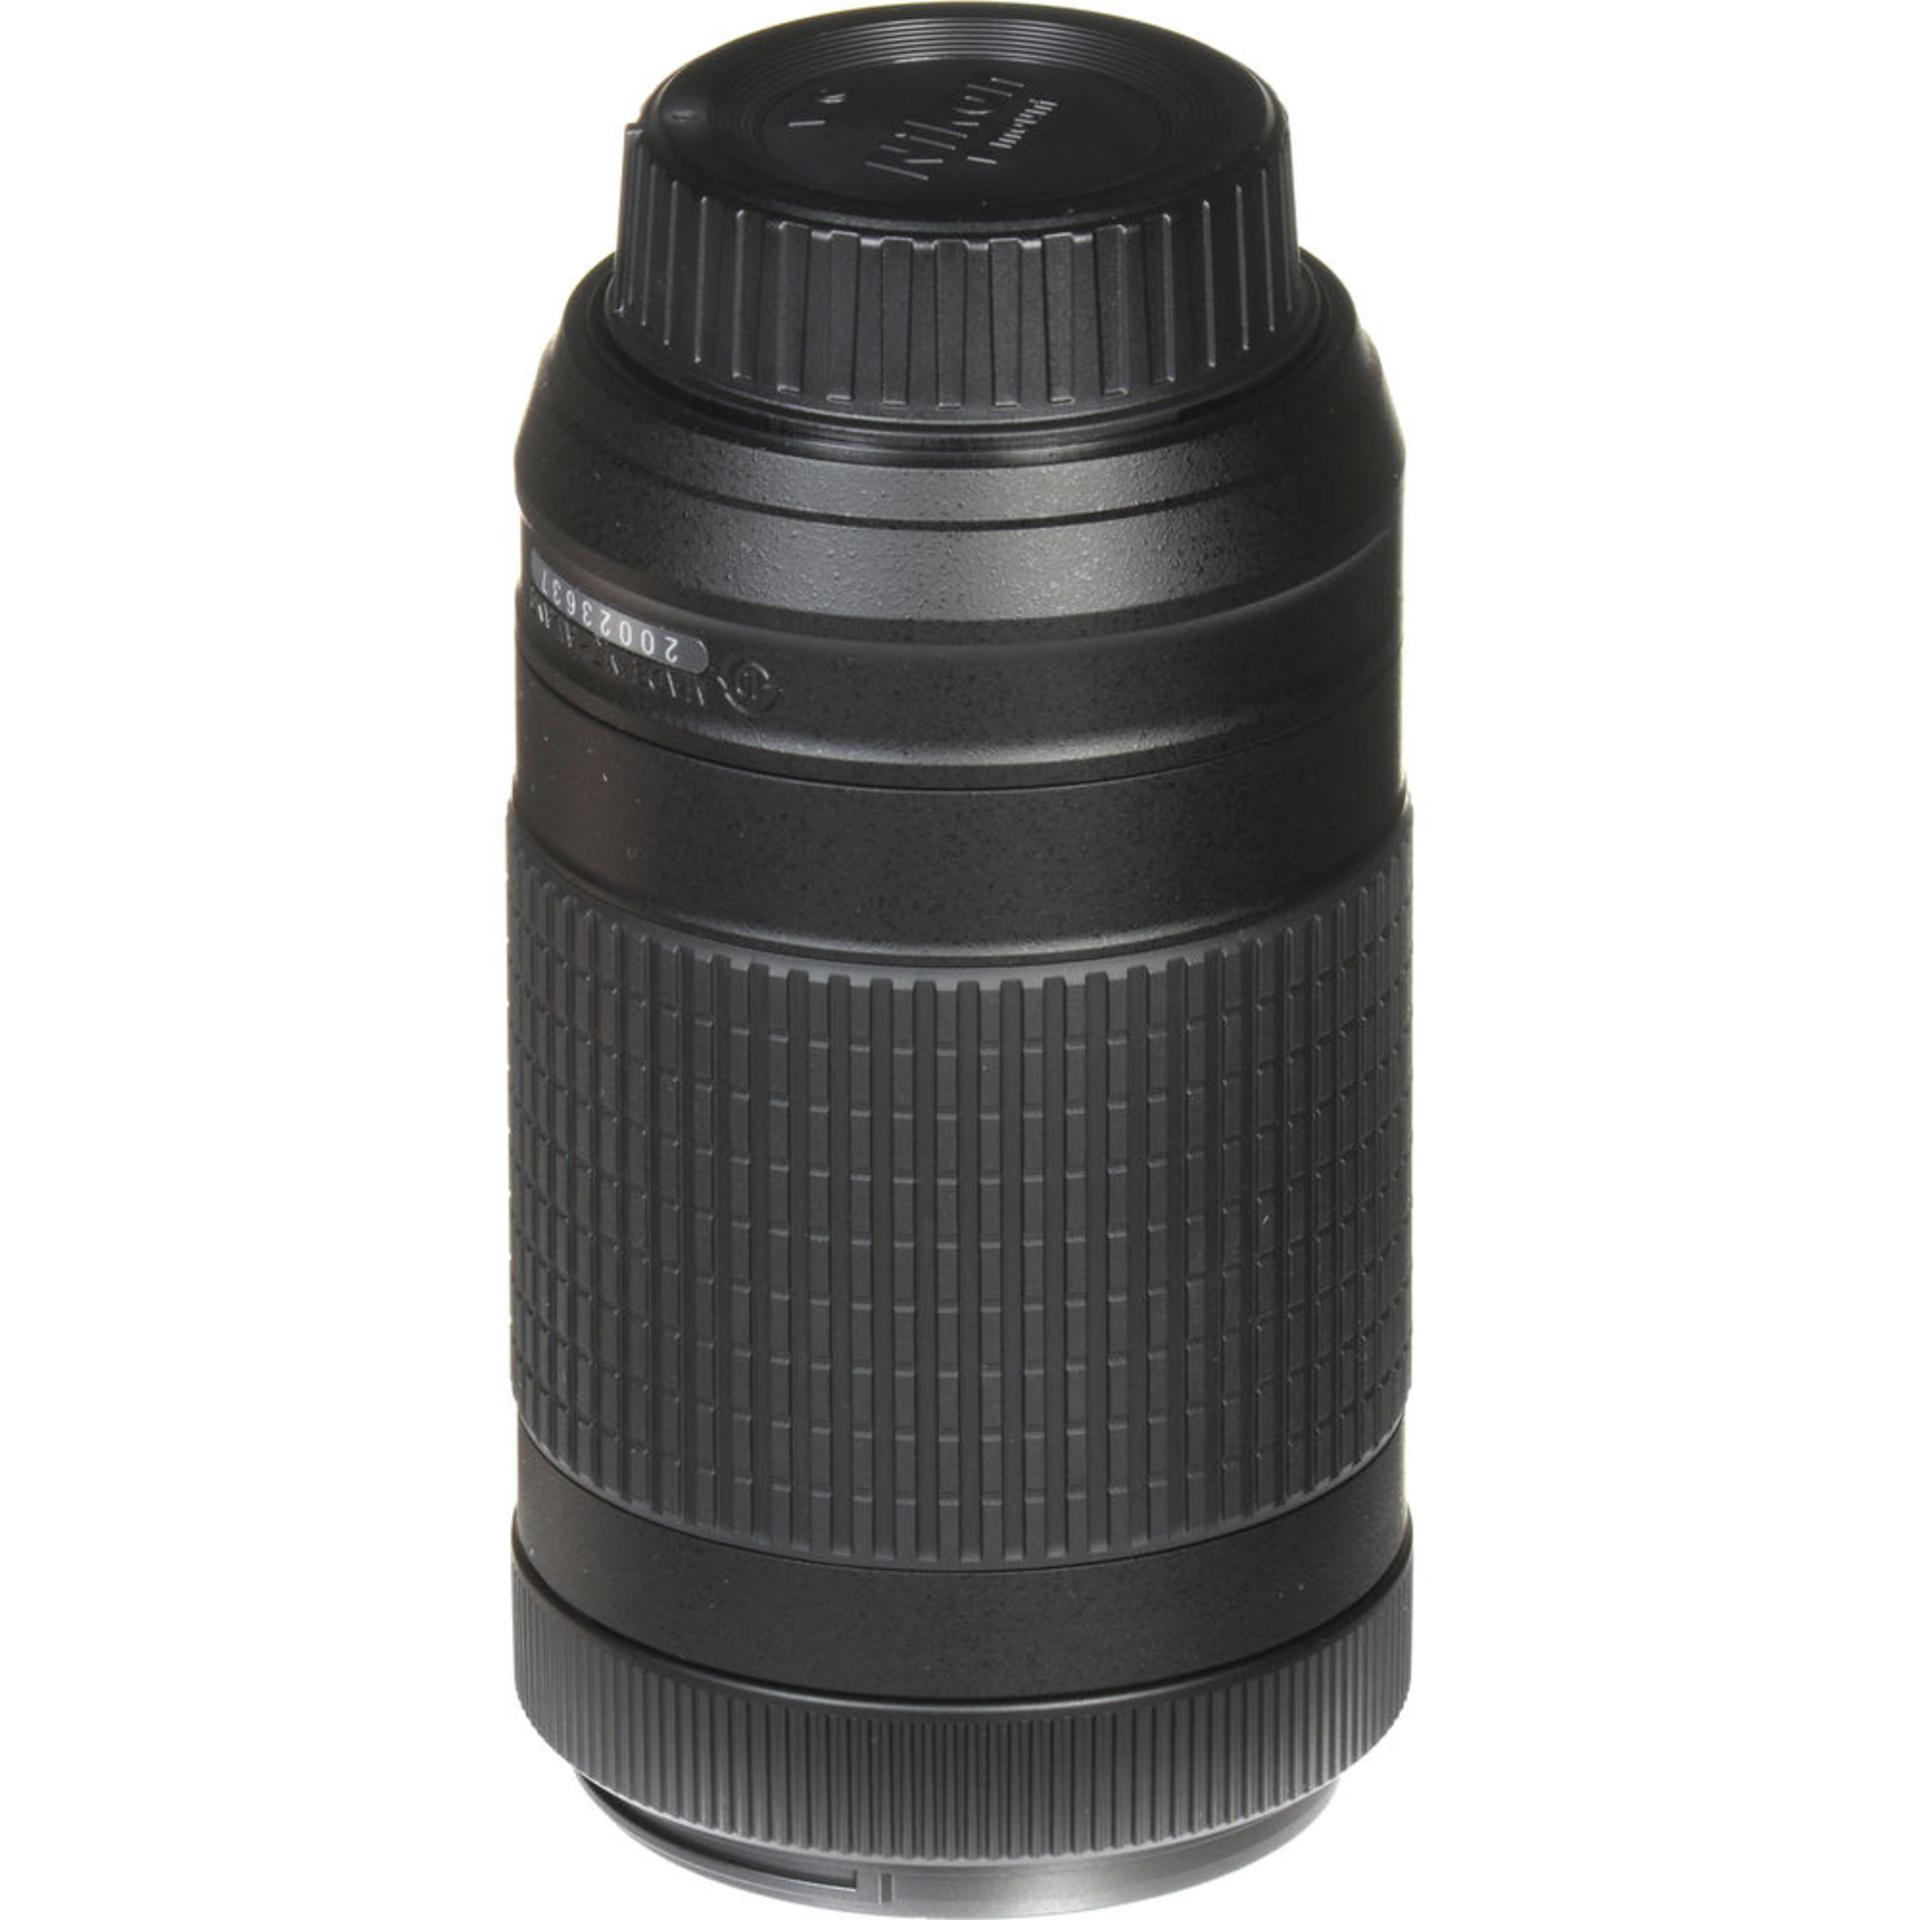 Nikon AF-P DX Nikkor 70-300mm F4.5-6.3G VR